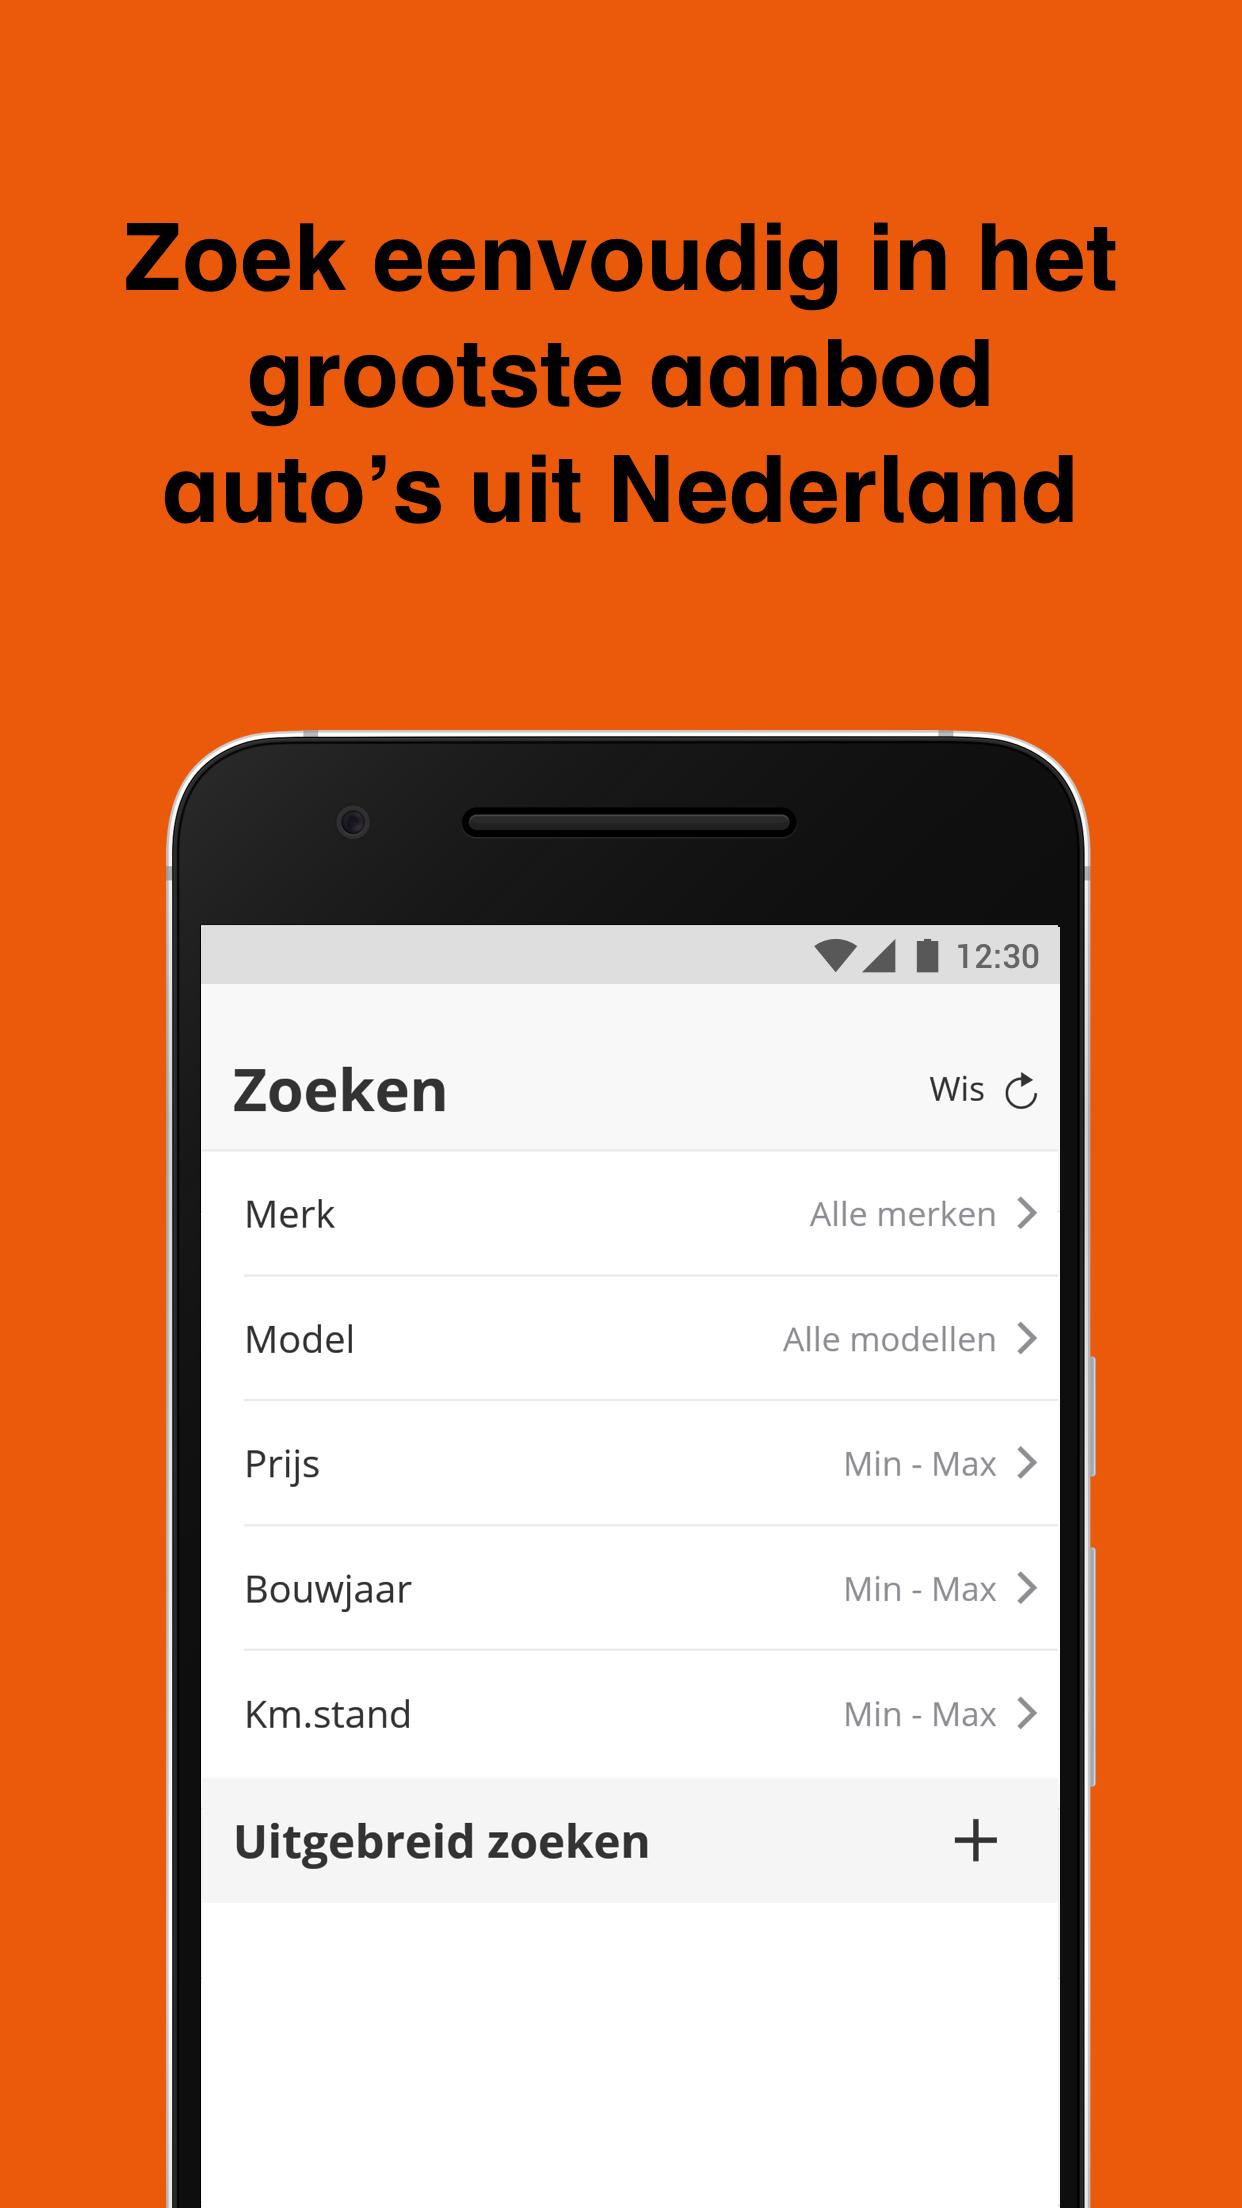 web Inzichtelijk Ja GasPedaal.nl - Tweedehands auto zoeken en kopen for Android - APK Download